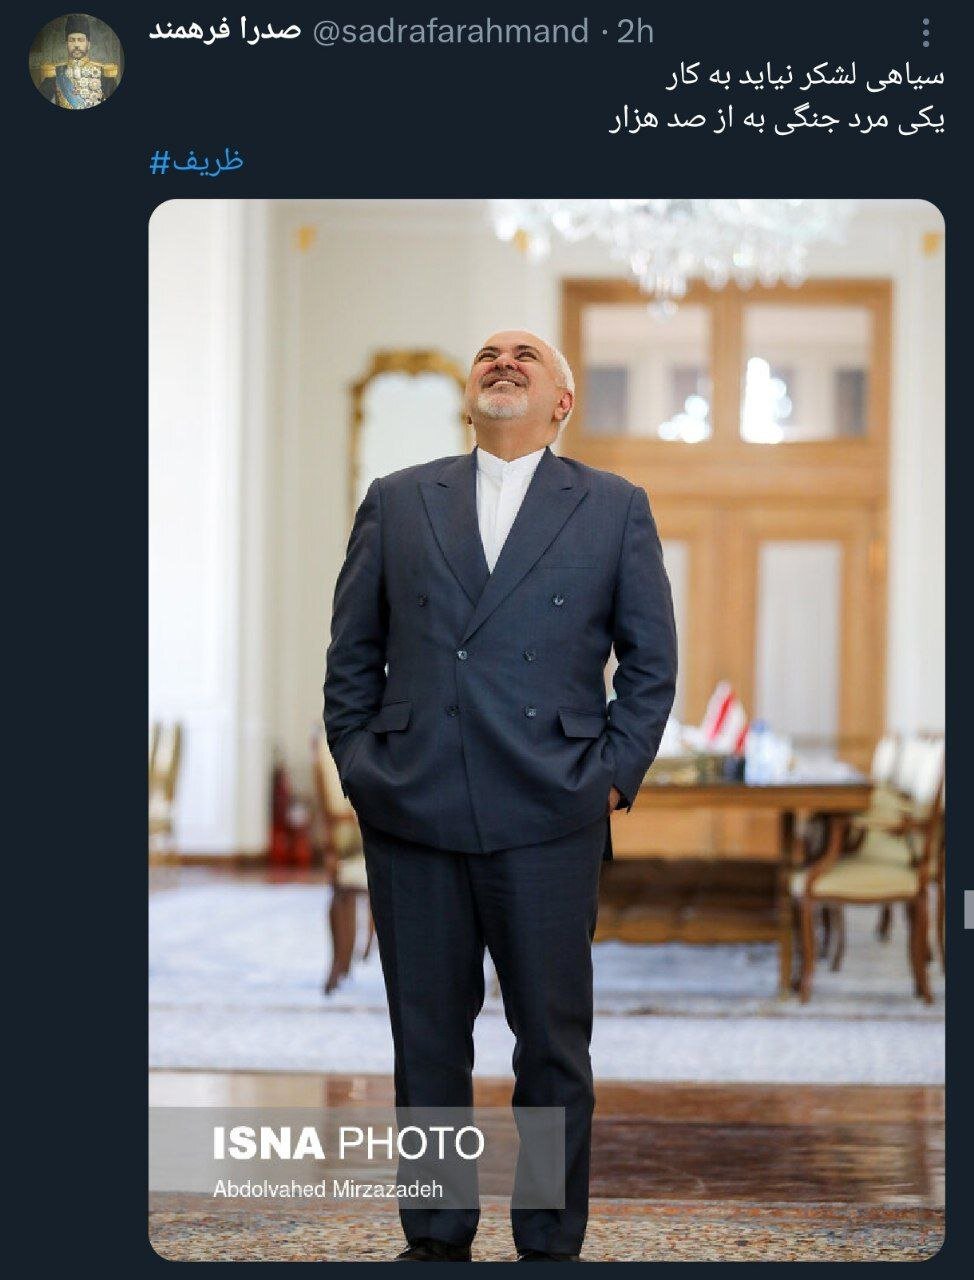 زلزله توئیتری ظریف /او در ۵ دقیقه از روی گفتمان «کاسبان تحریم» با غلتک رد شد /یکی مرد جنگی به از صد هزار